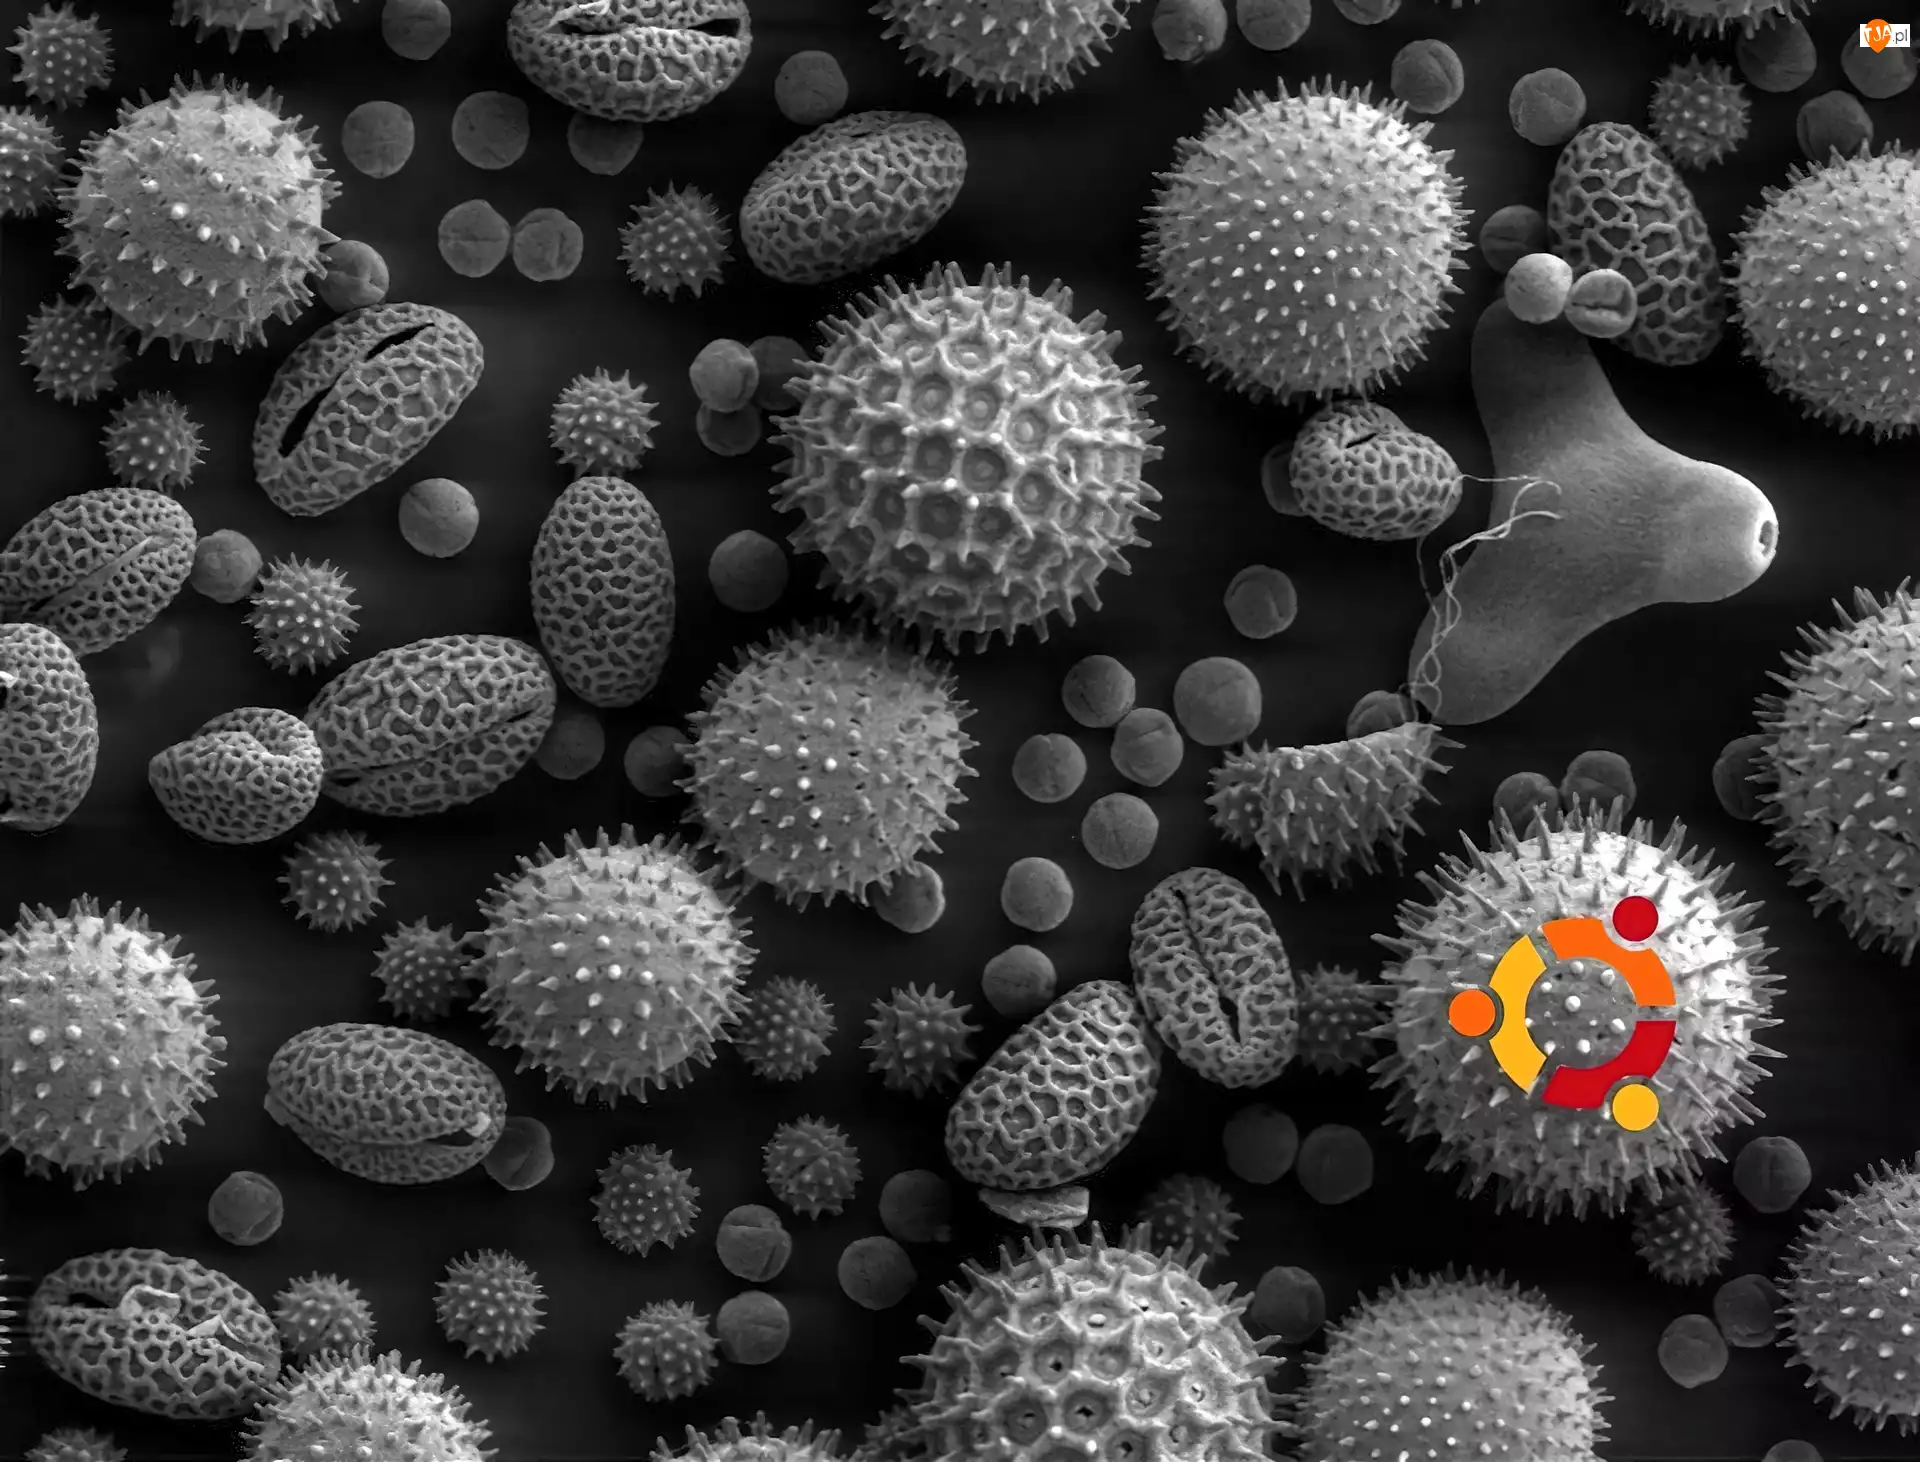 bakterie, Ubuntu, krąg, symbol, wirusy, ludzie